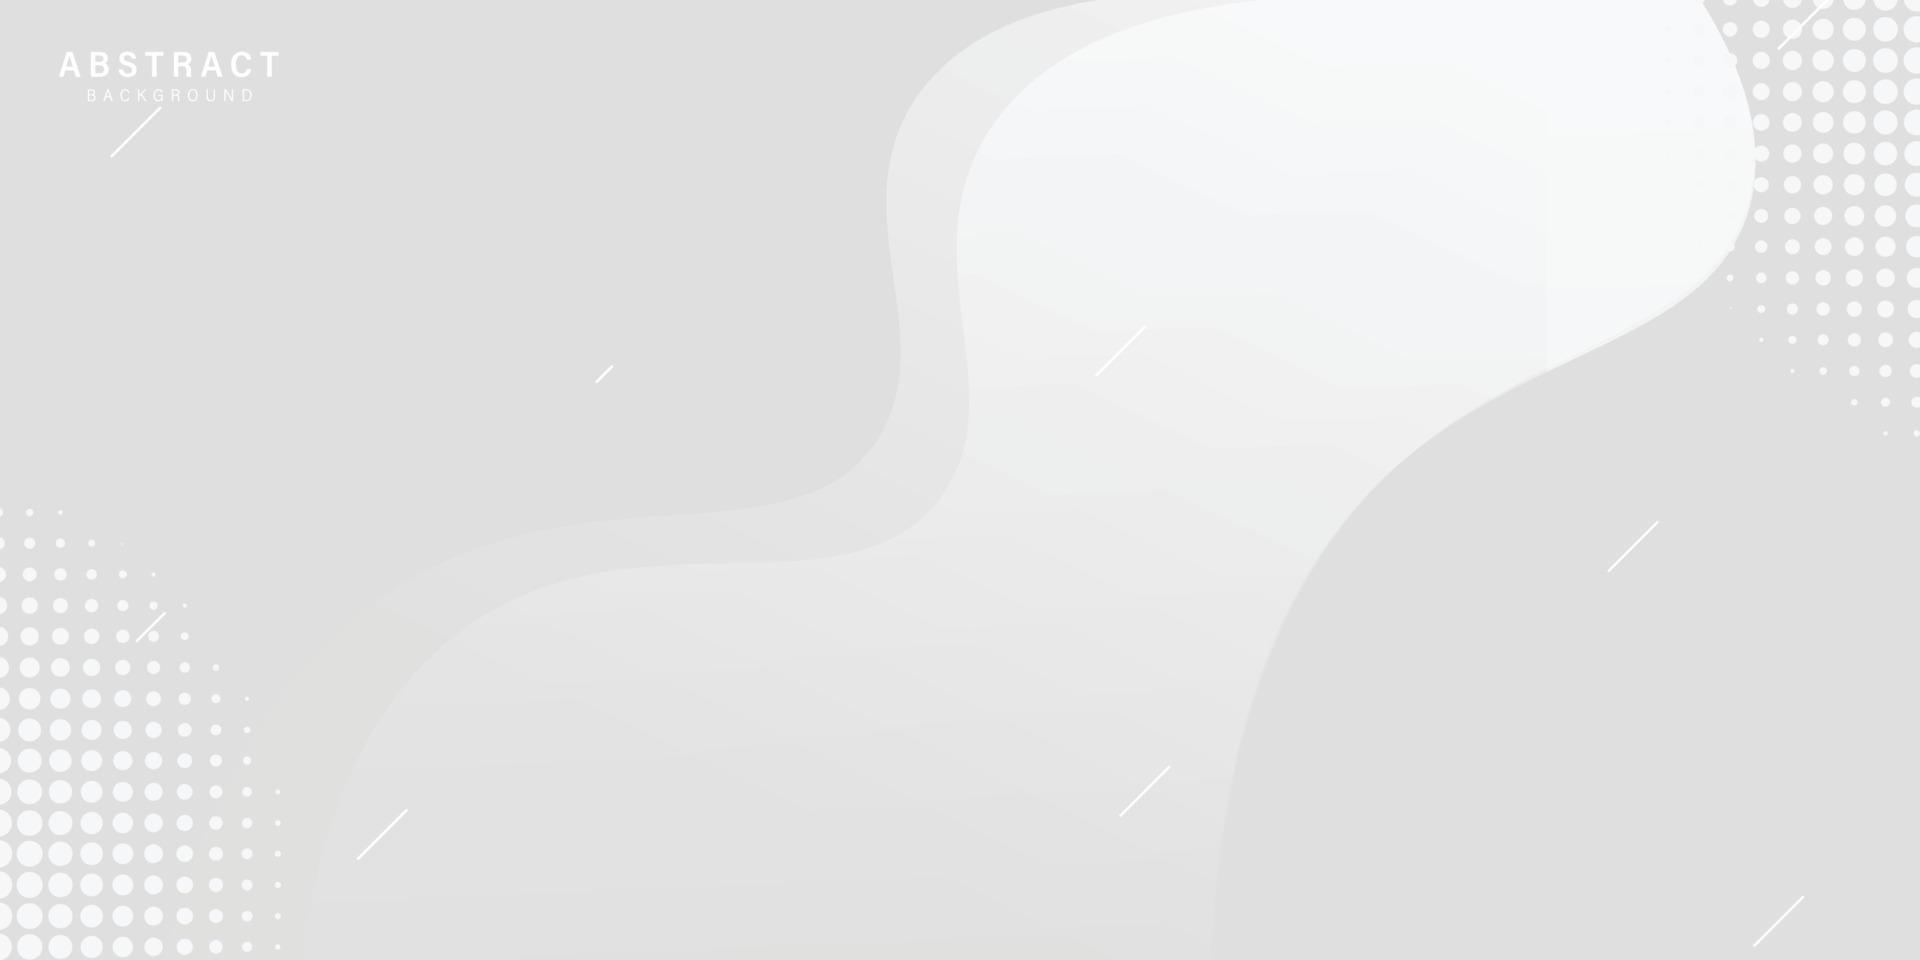 fundo abstrato branco moderno com forma ondulada, uso abstrato de fundo de onda cinza e branca para negócios, corporativo, instituição, cartaz, modelo, festa, festivo, seminário, vetor, ilustração vetor